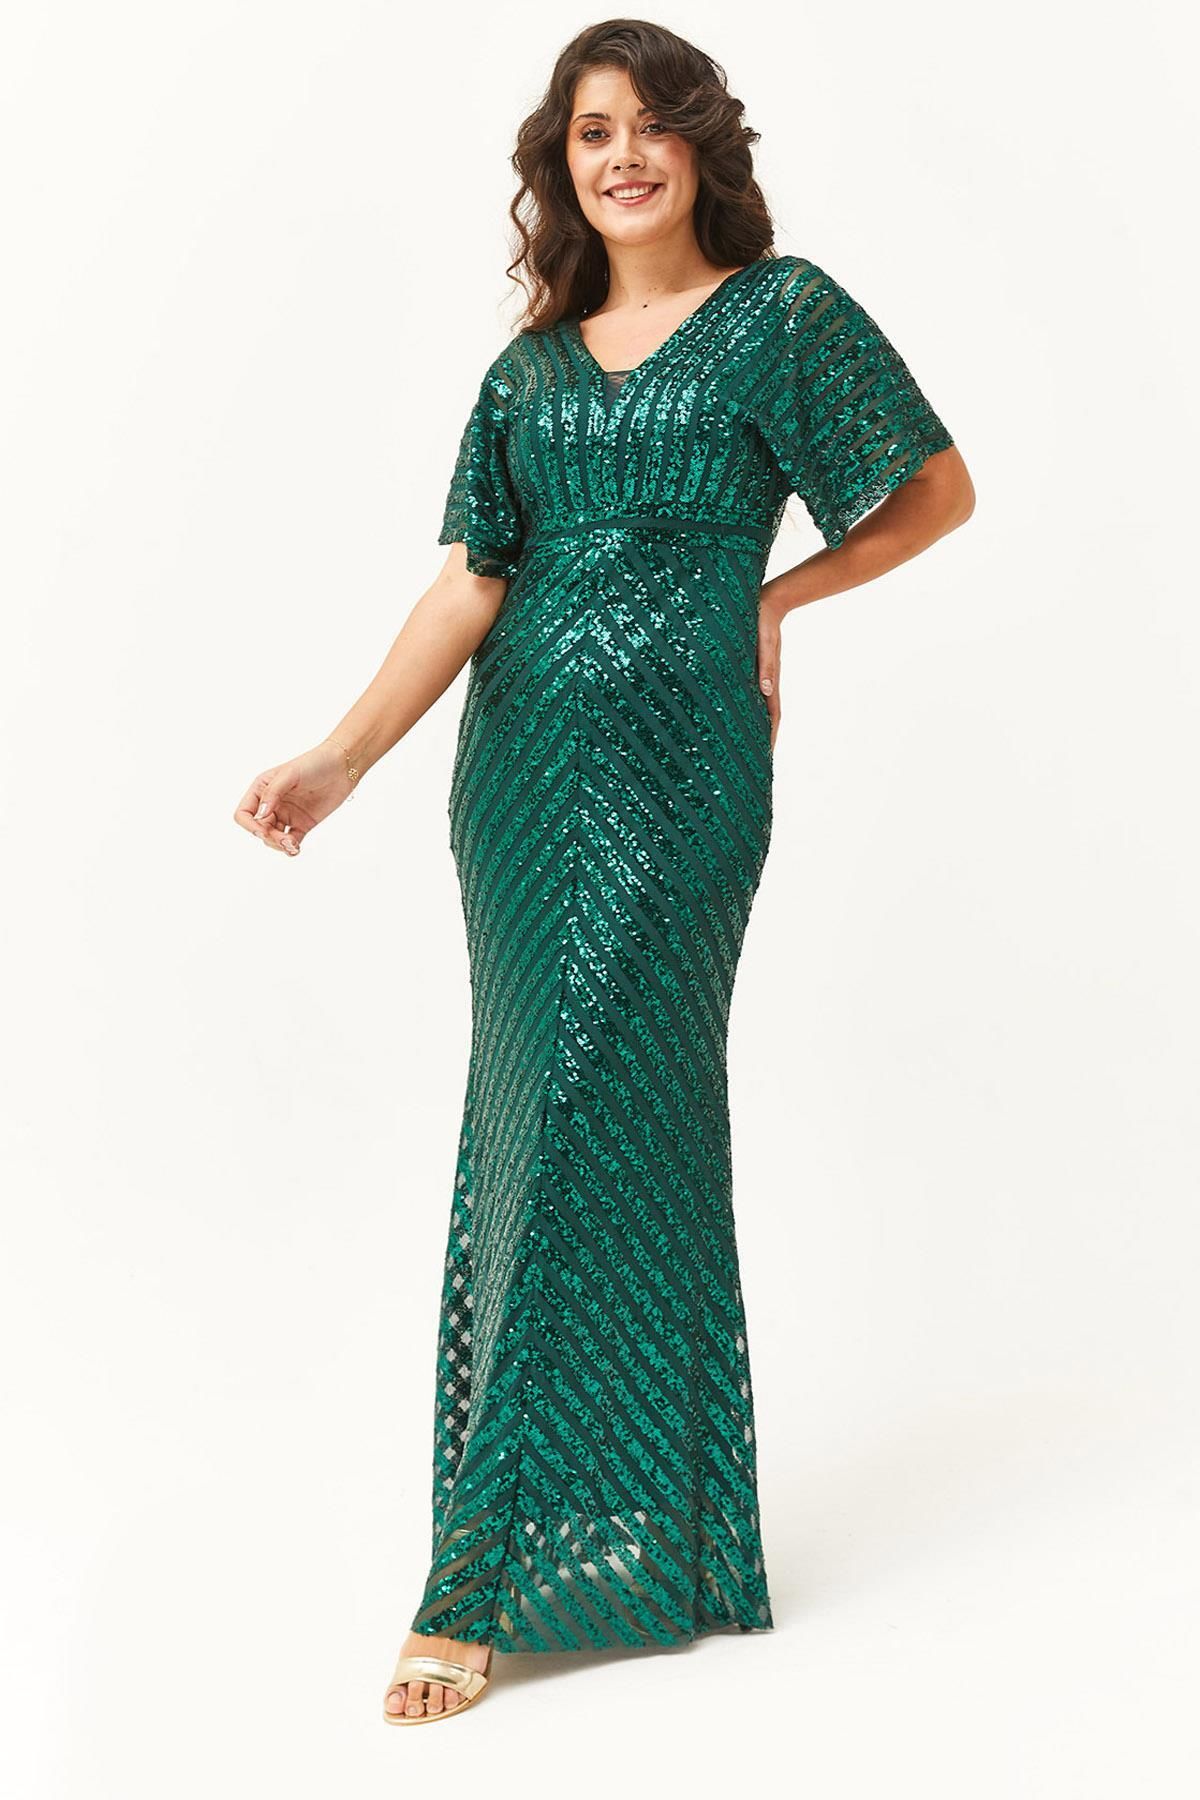 Ebsumu Kadın Büyük Beden Pul Payet Desenli Uzun Yeşil Abiye & Davet Elbisesi